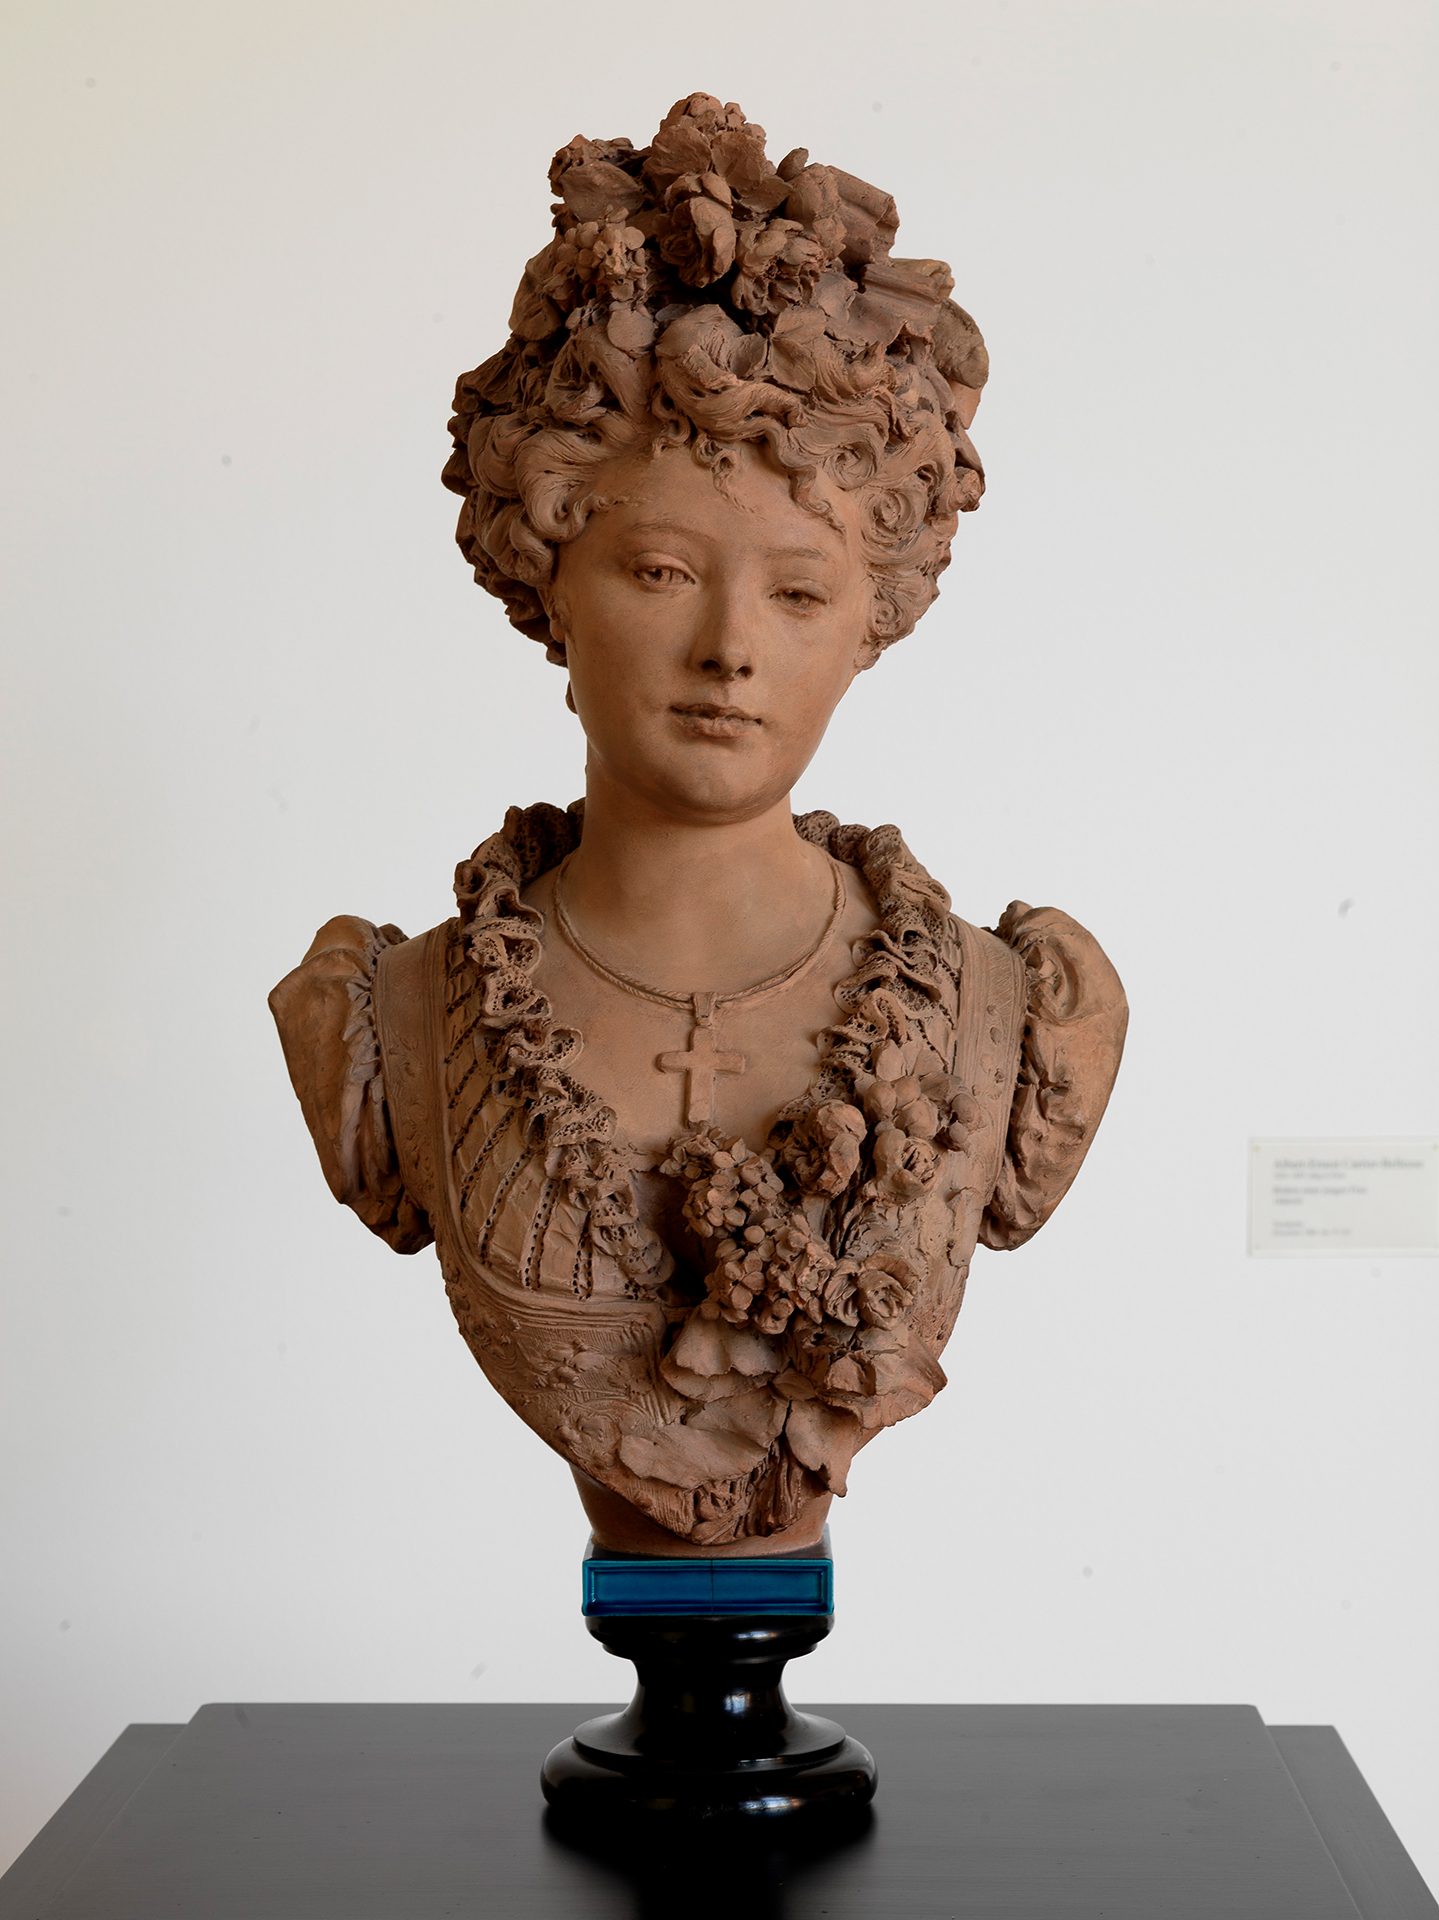 Fotografie einer Skulptur einer jungen Frau, deren Haar und Dekollete mit Blumen verziert ist